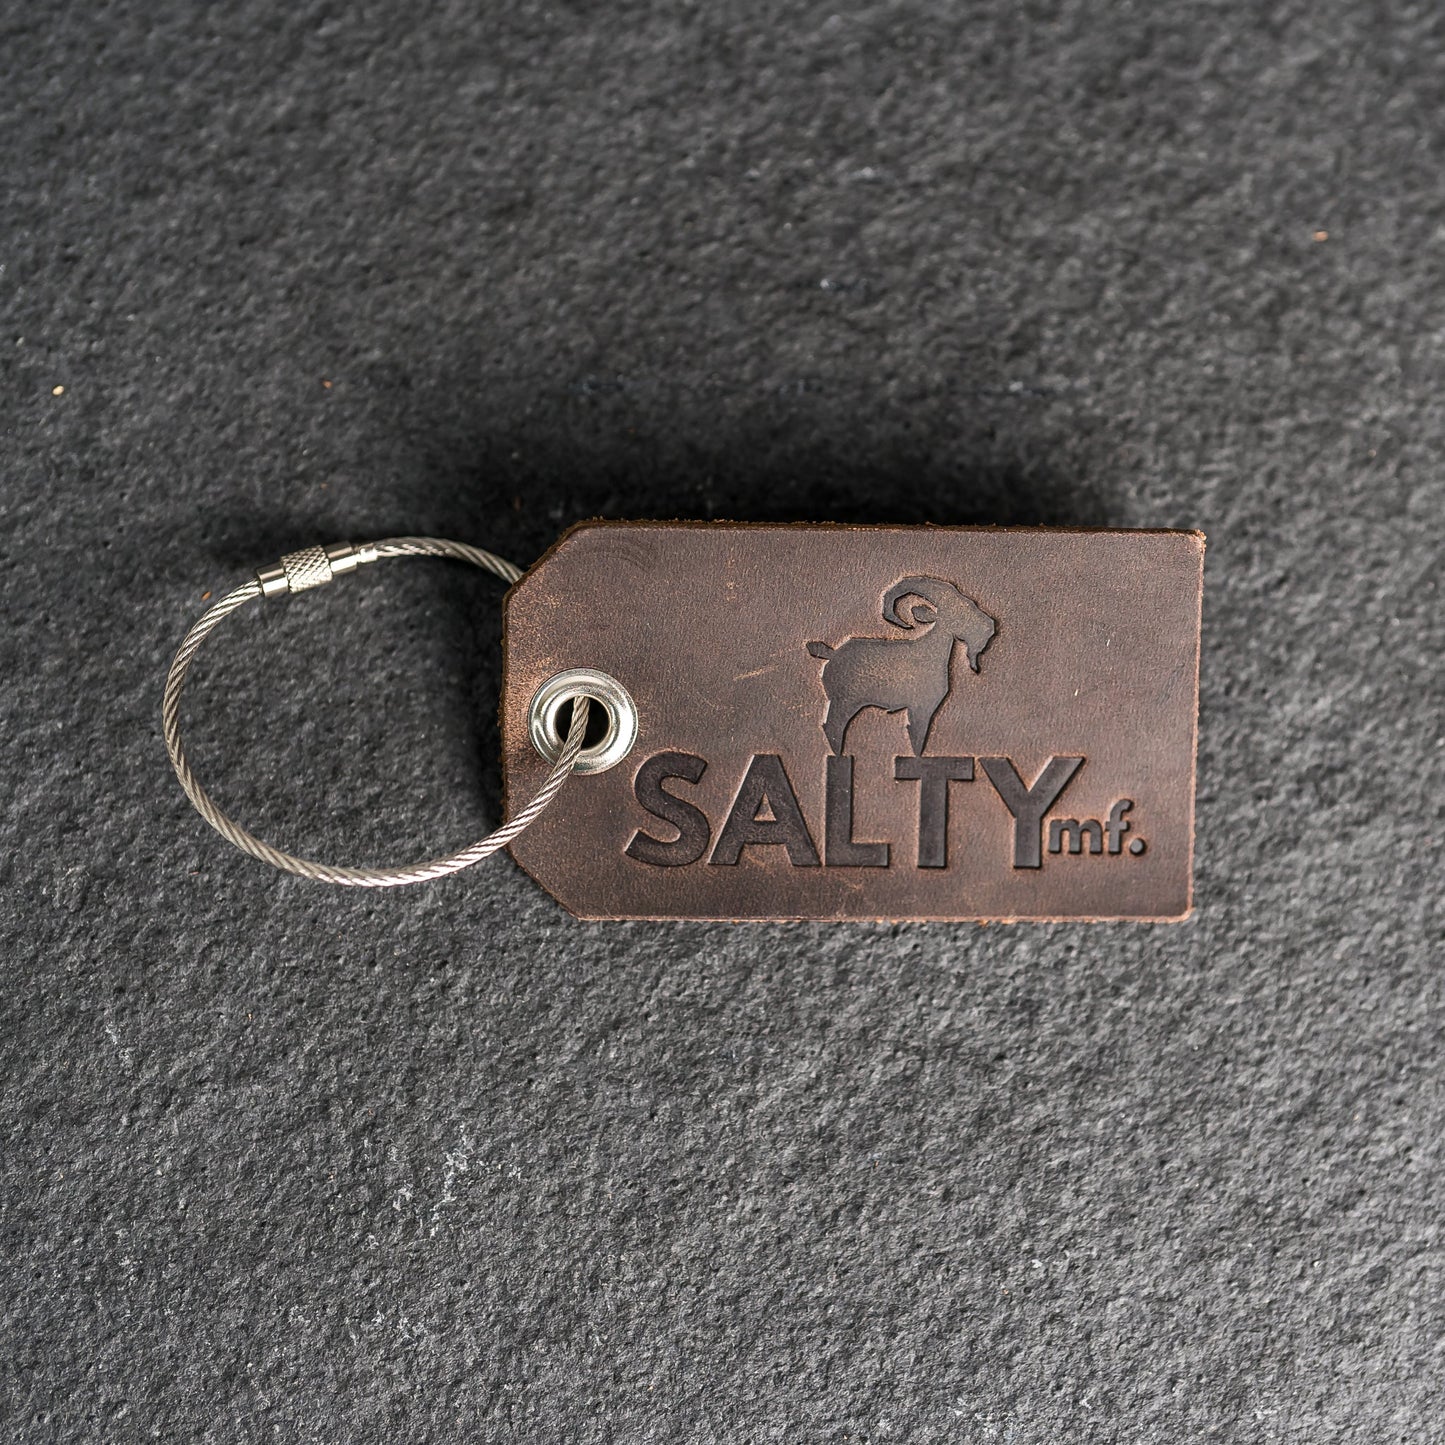 SaltyMF Luggage Tag